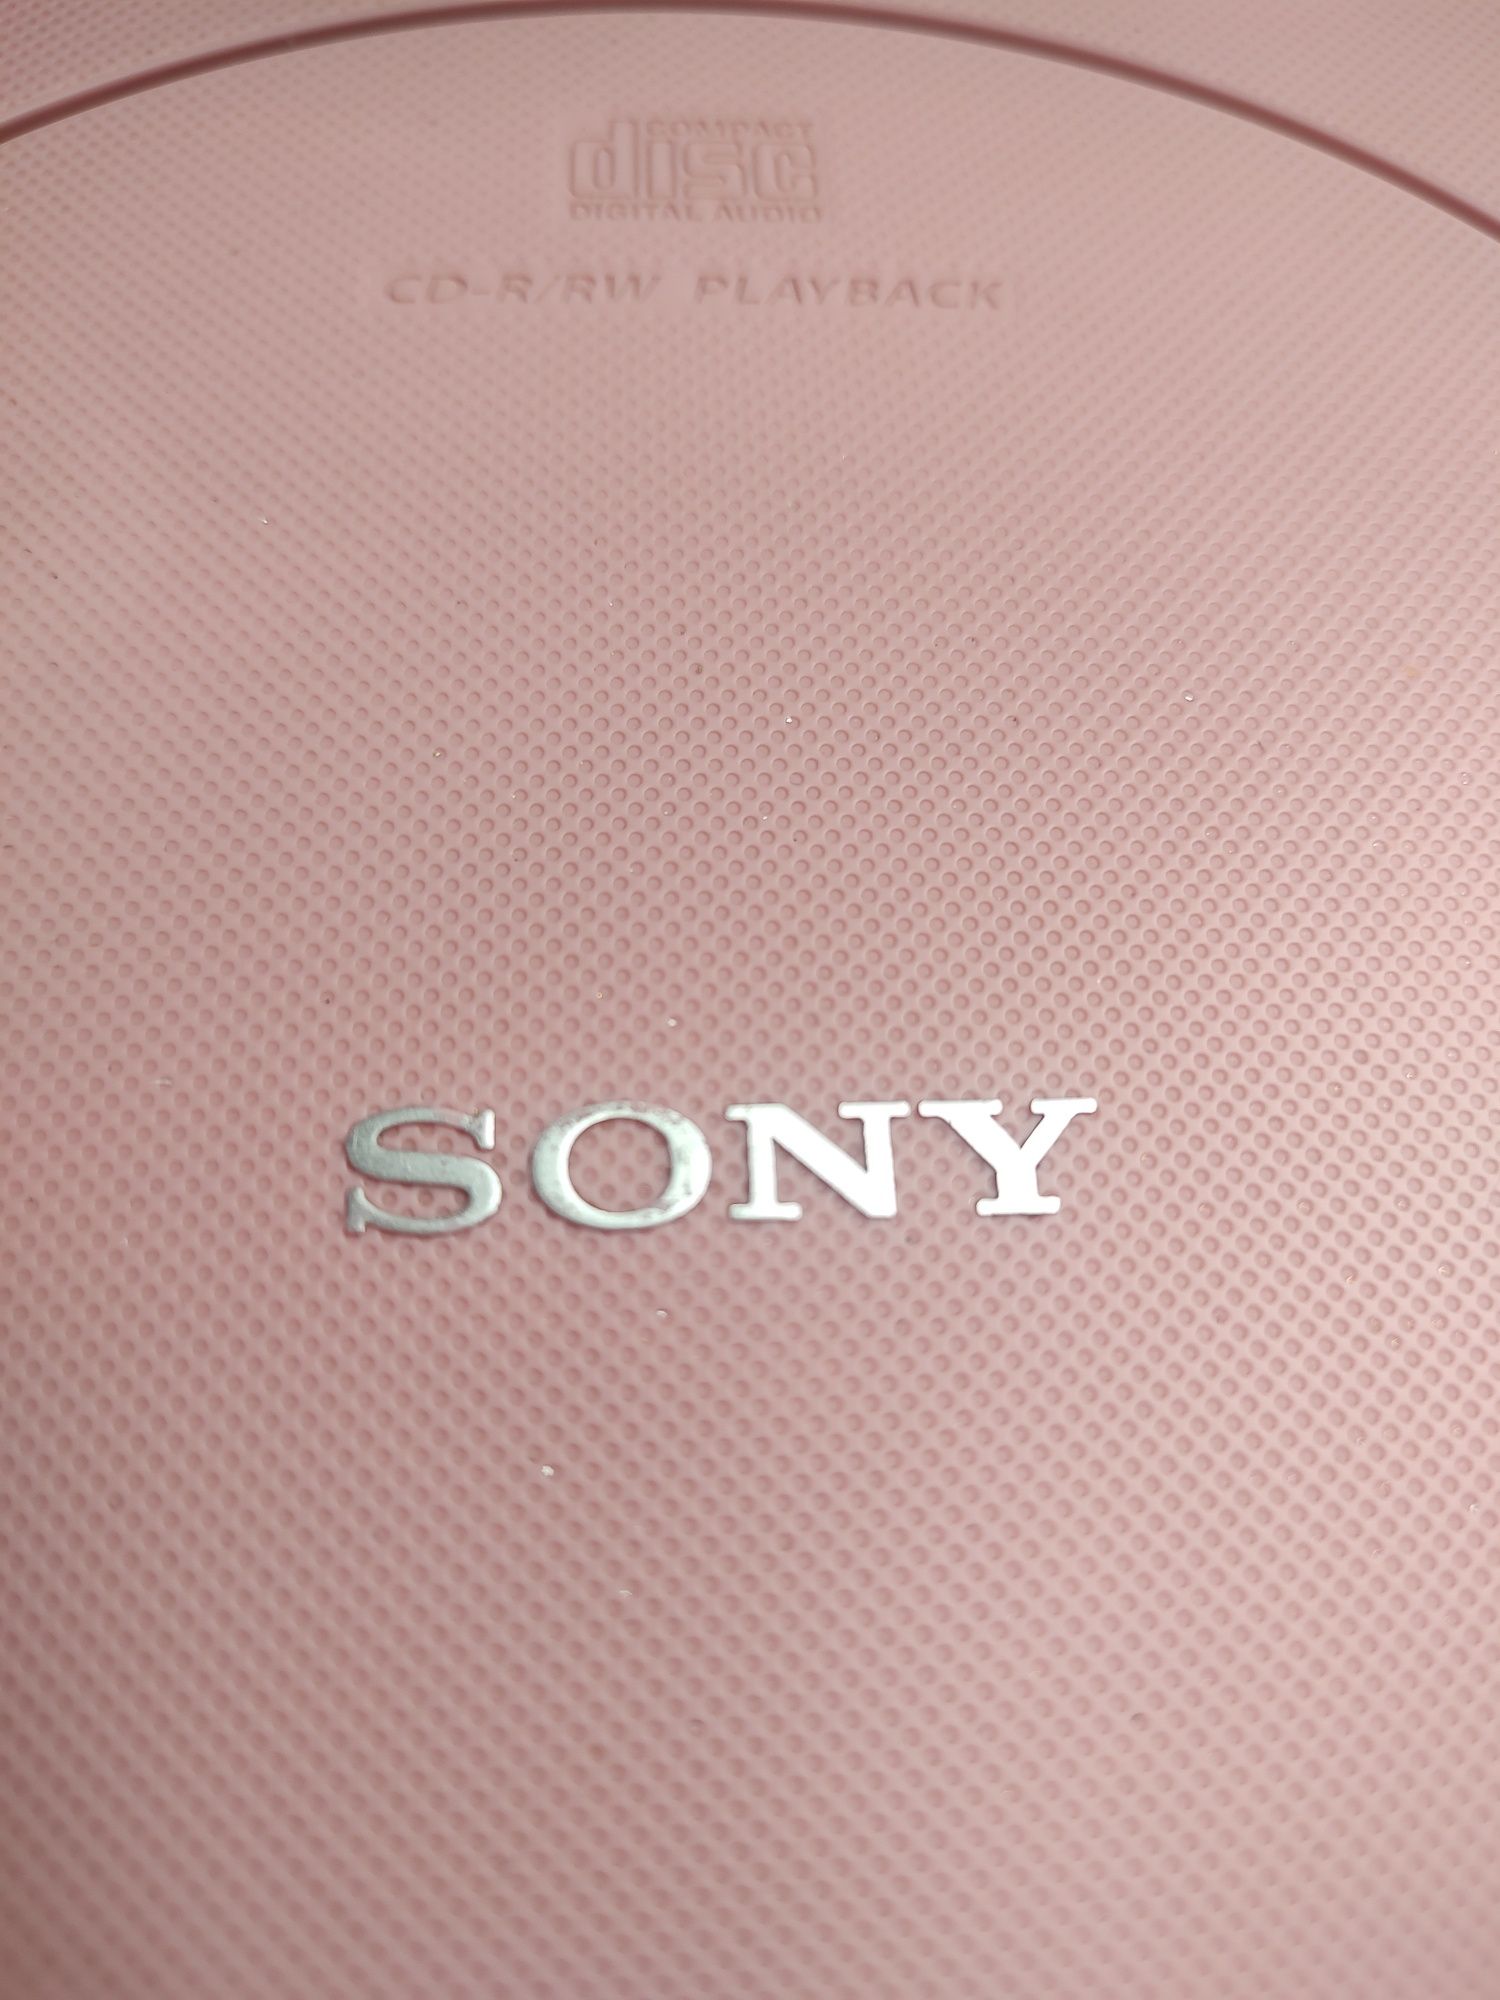 Radio i cd Sony w pięknym rożowym kolorze.